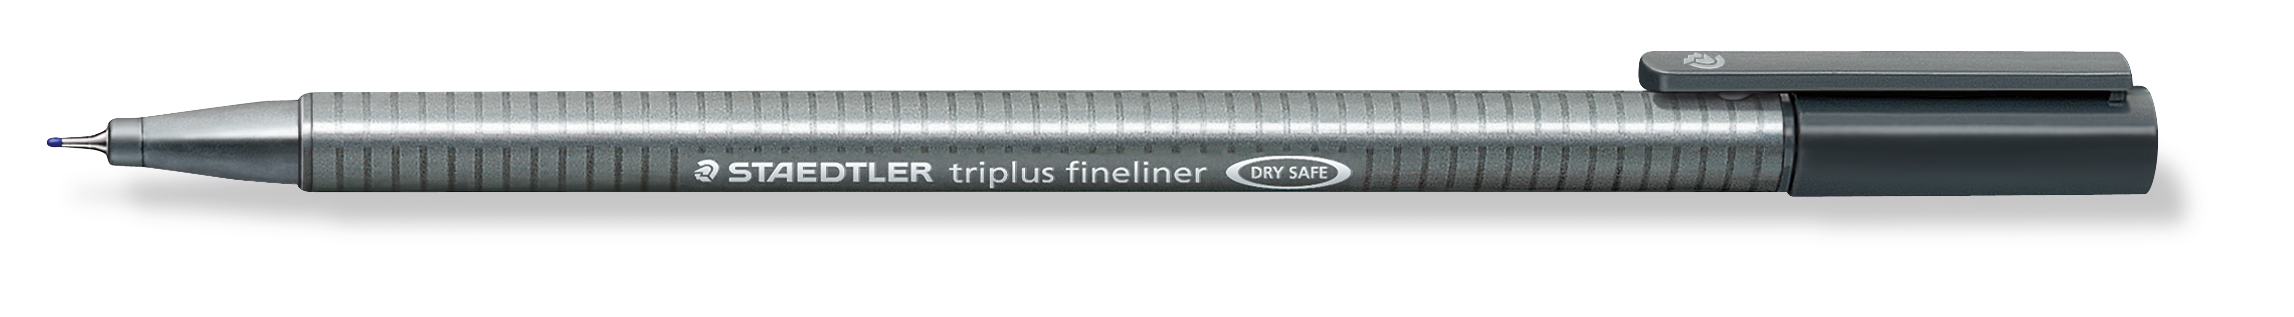 STAEDTLER Triplus Fineliner 0,3mm 334-8 grau